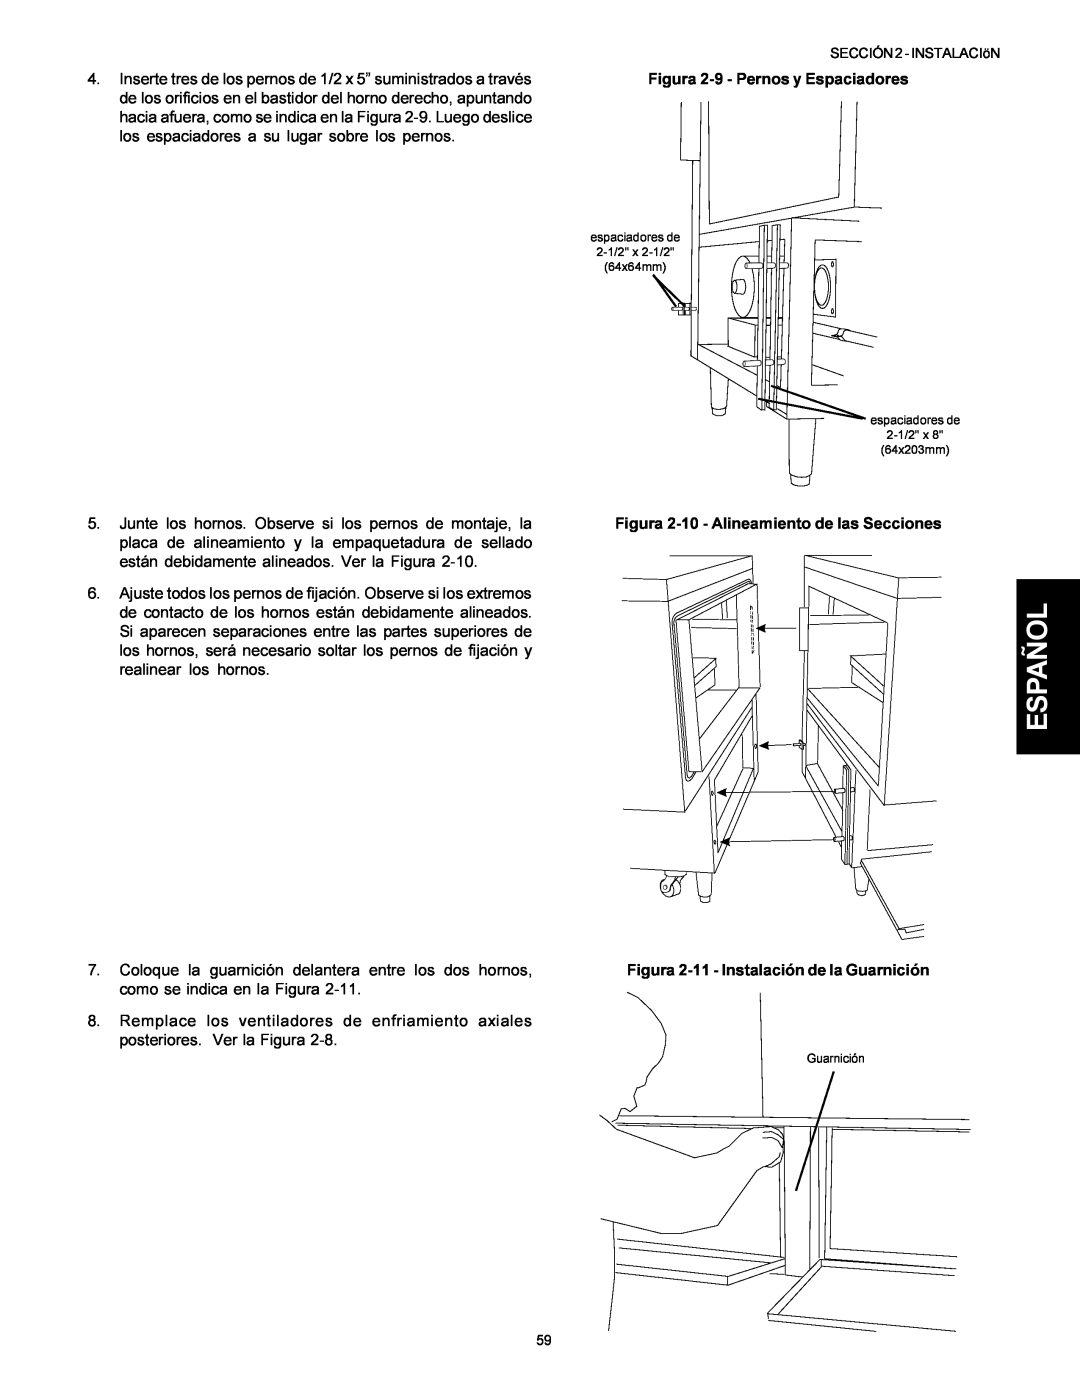 Middleby Marshall PS314, PS360WB Español, Figura 2-9 - Pernos y Espaciadores, Figura 2-10 - Alineamiento de las Secciones 